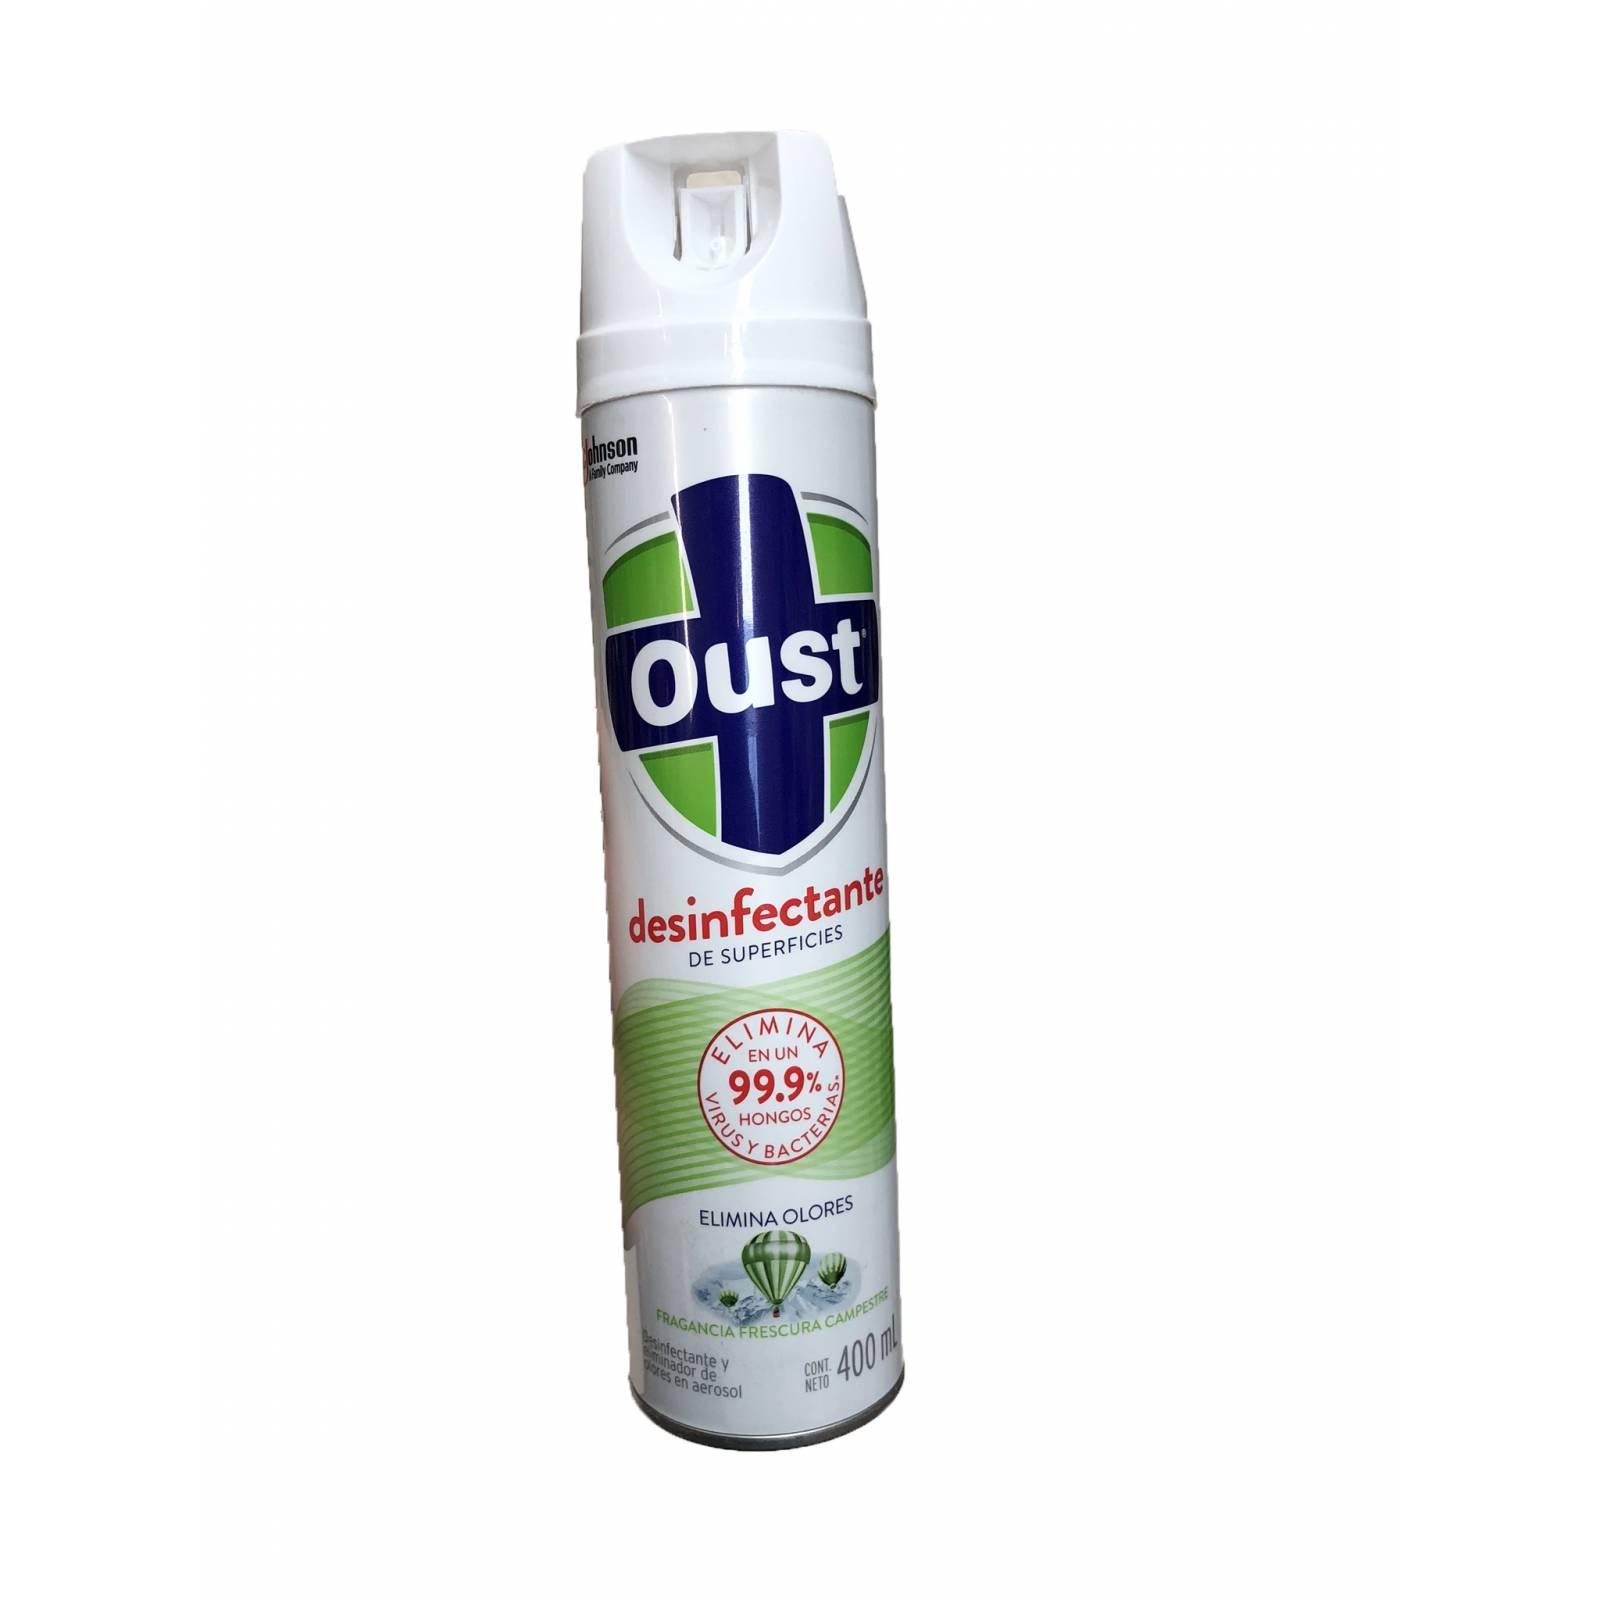 Oust Desinfectante de superficies, Elimina 99.9% de hongos, virus y bacterias, elimina los malos olores. Fragancia Floral. 400 ml.